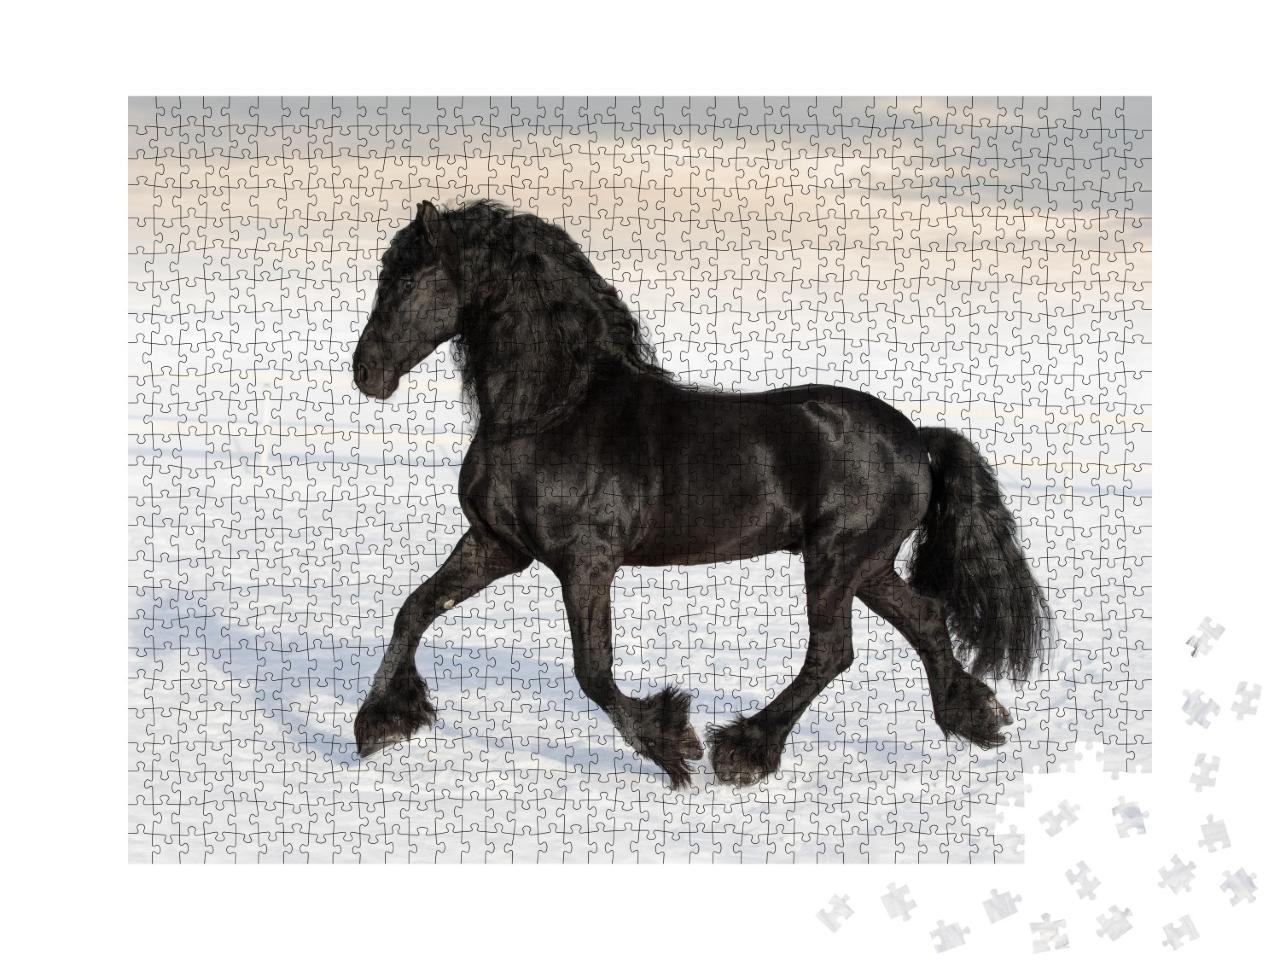 Puzzle de 1000 pièces « Cheval frison noir dans la neige »